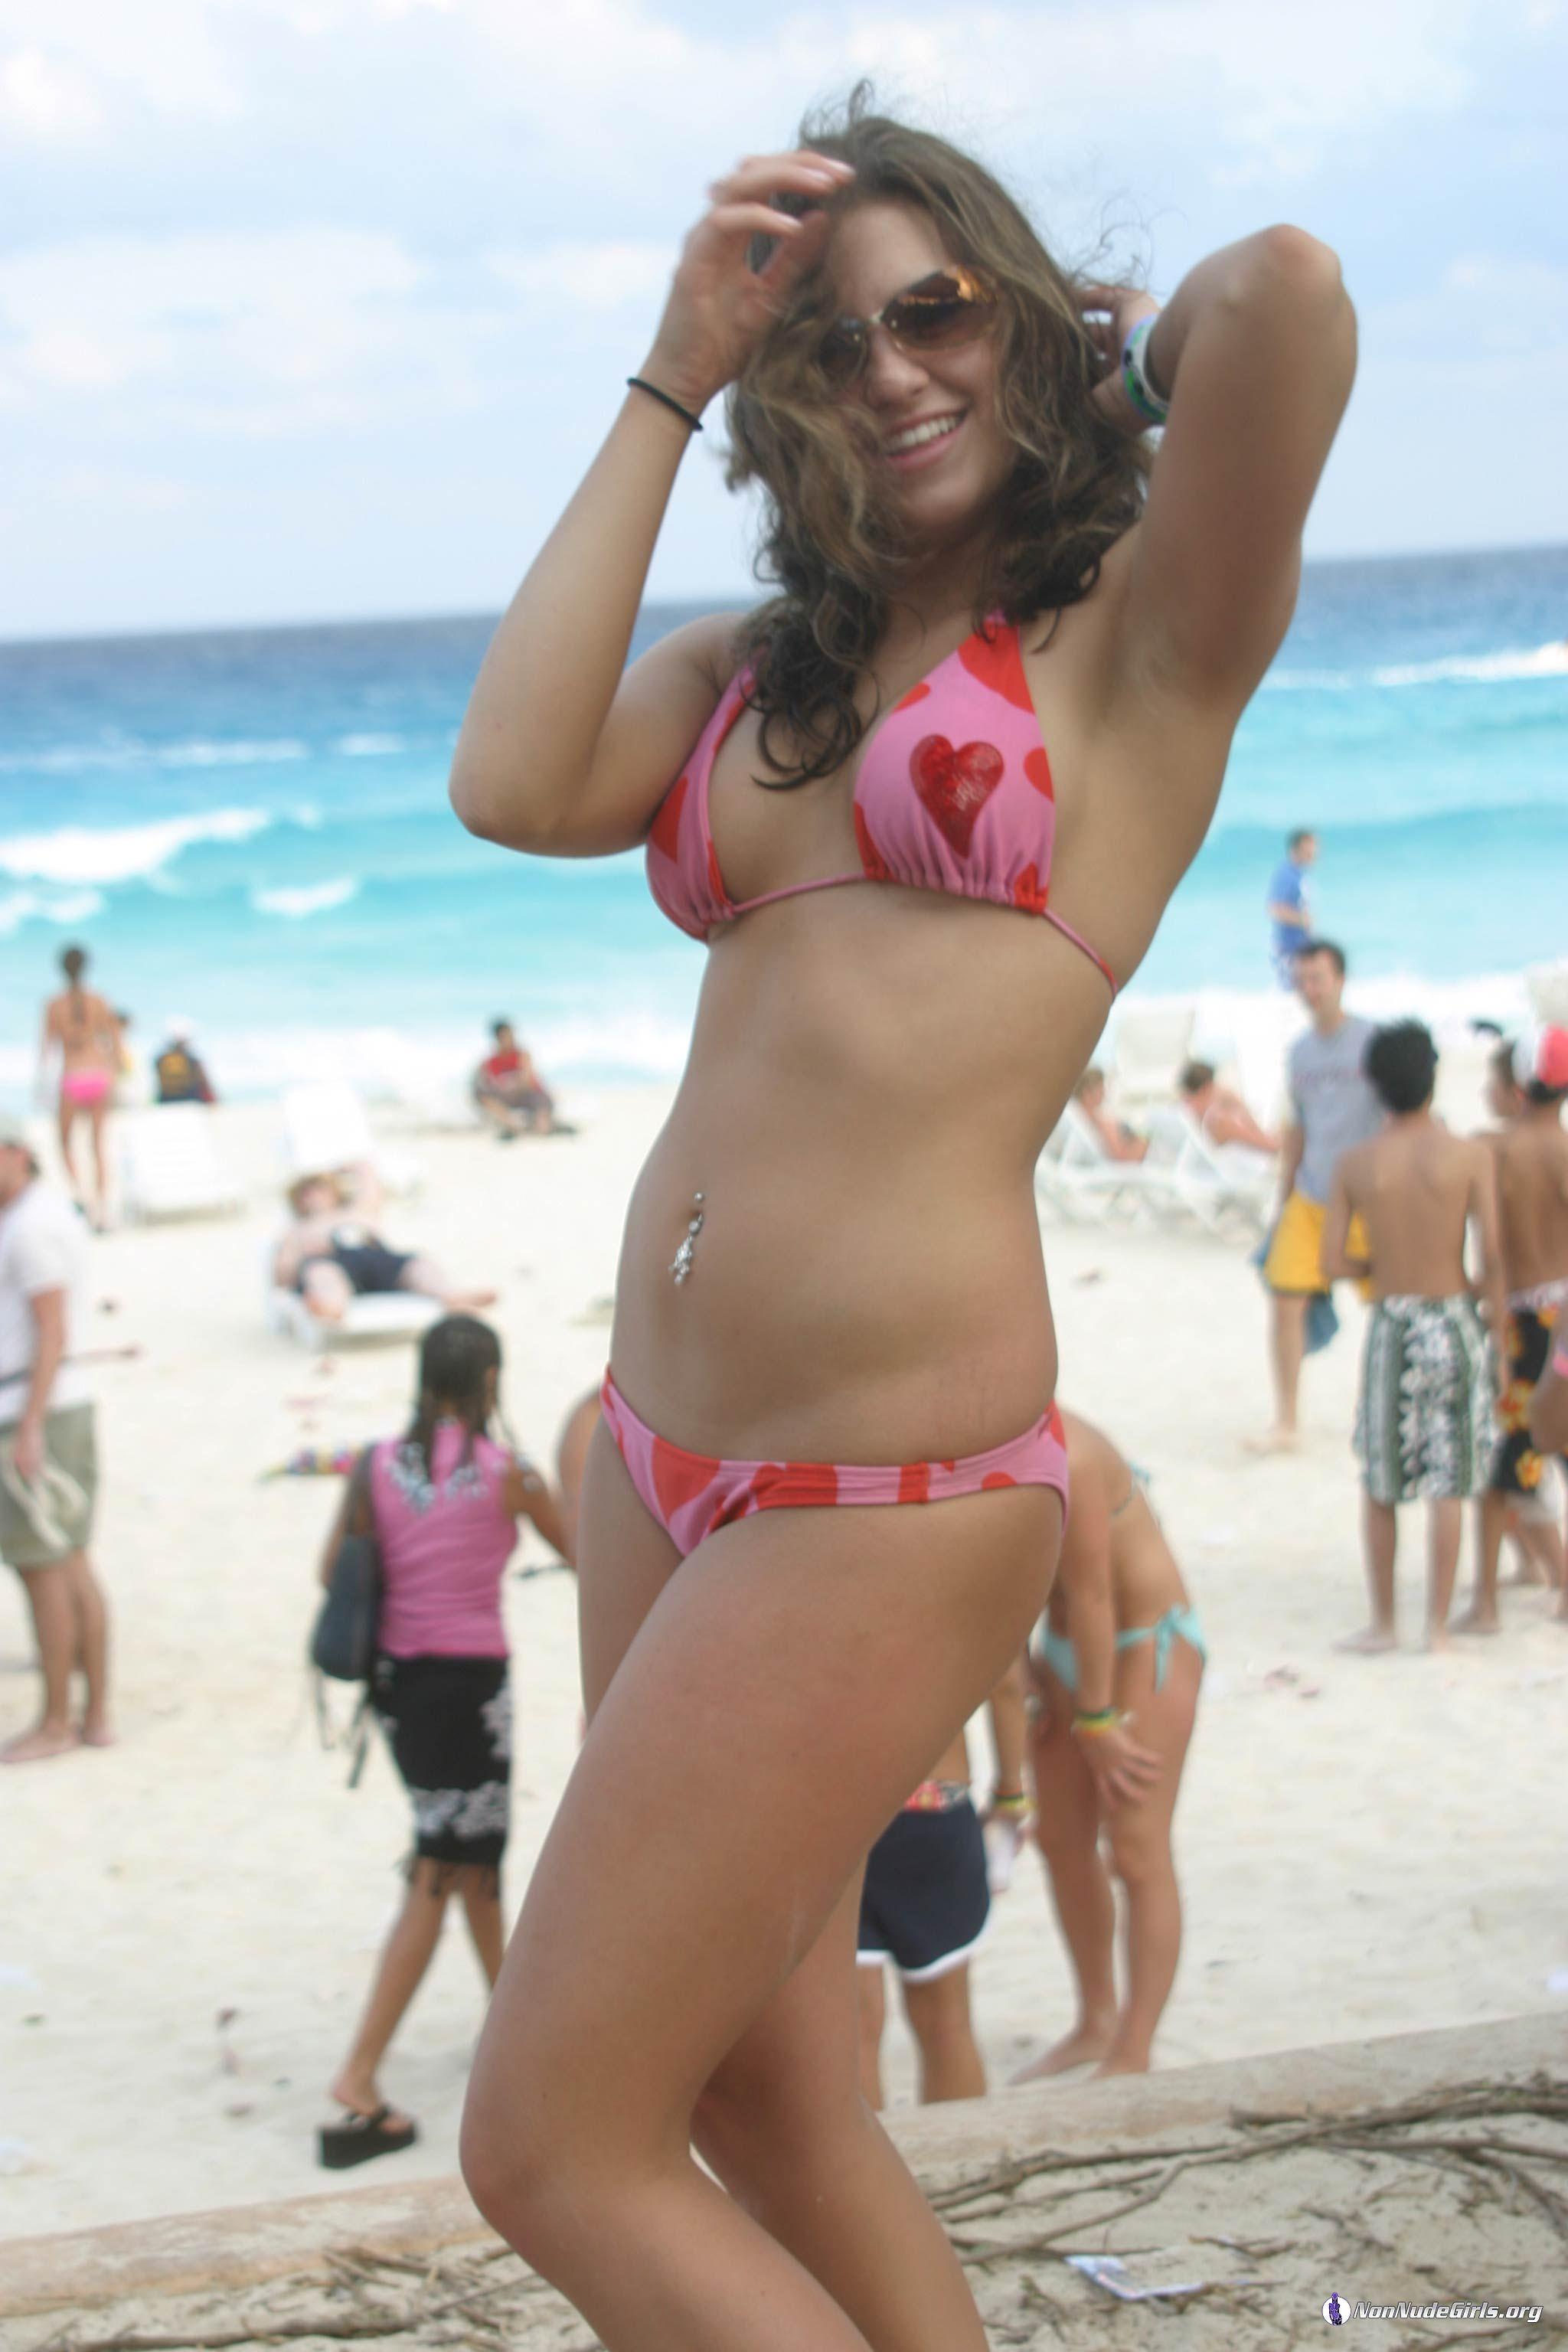 Bilder von heißen Teenager-Kolleginnen in Bikinis
 #60678508